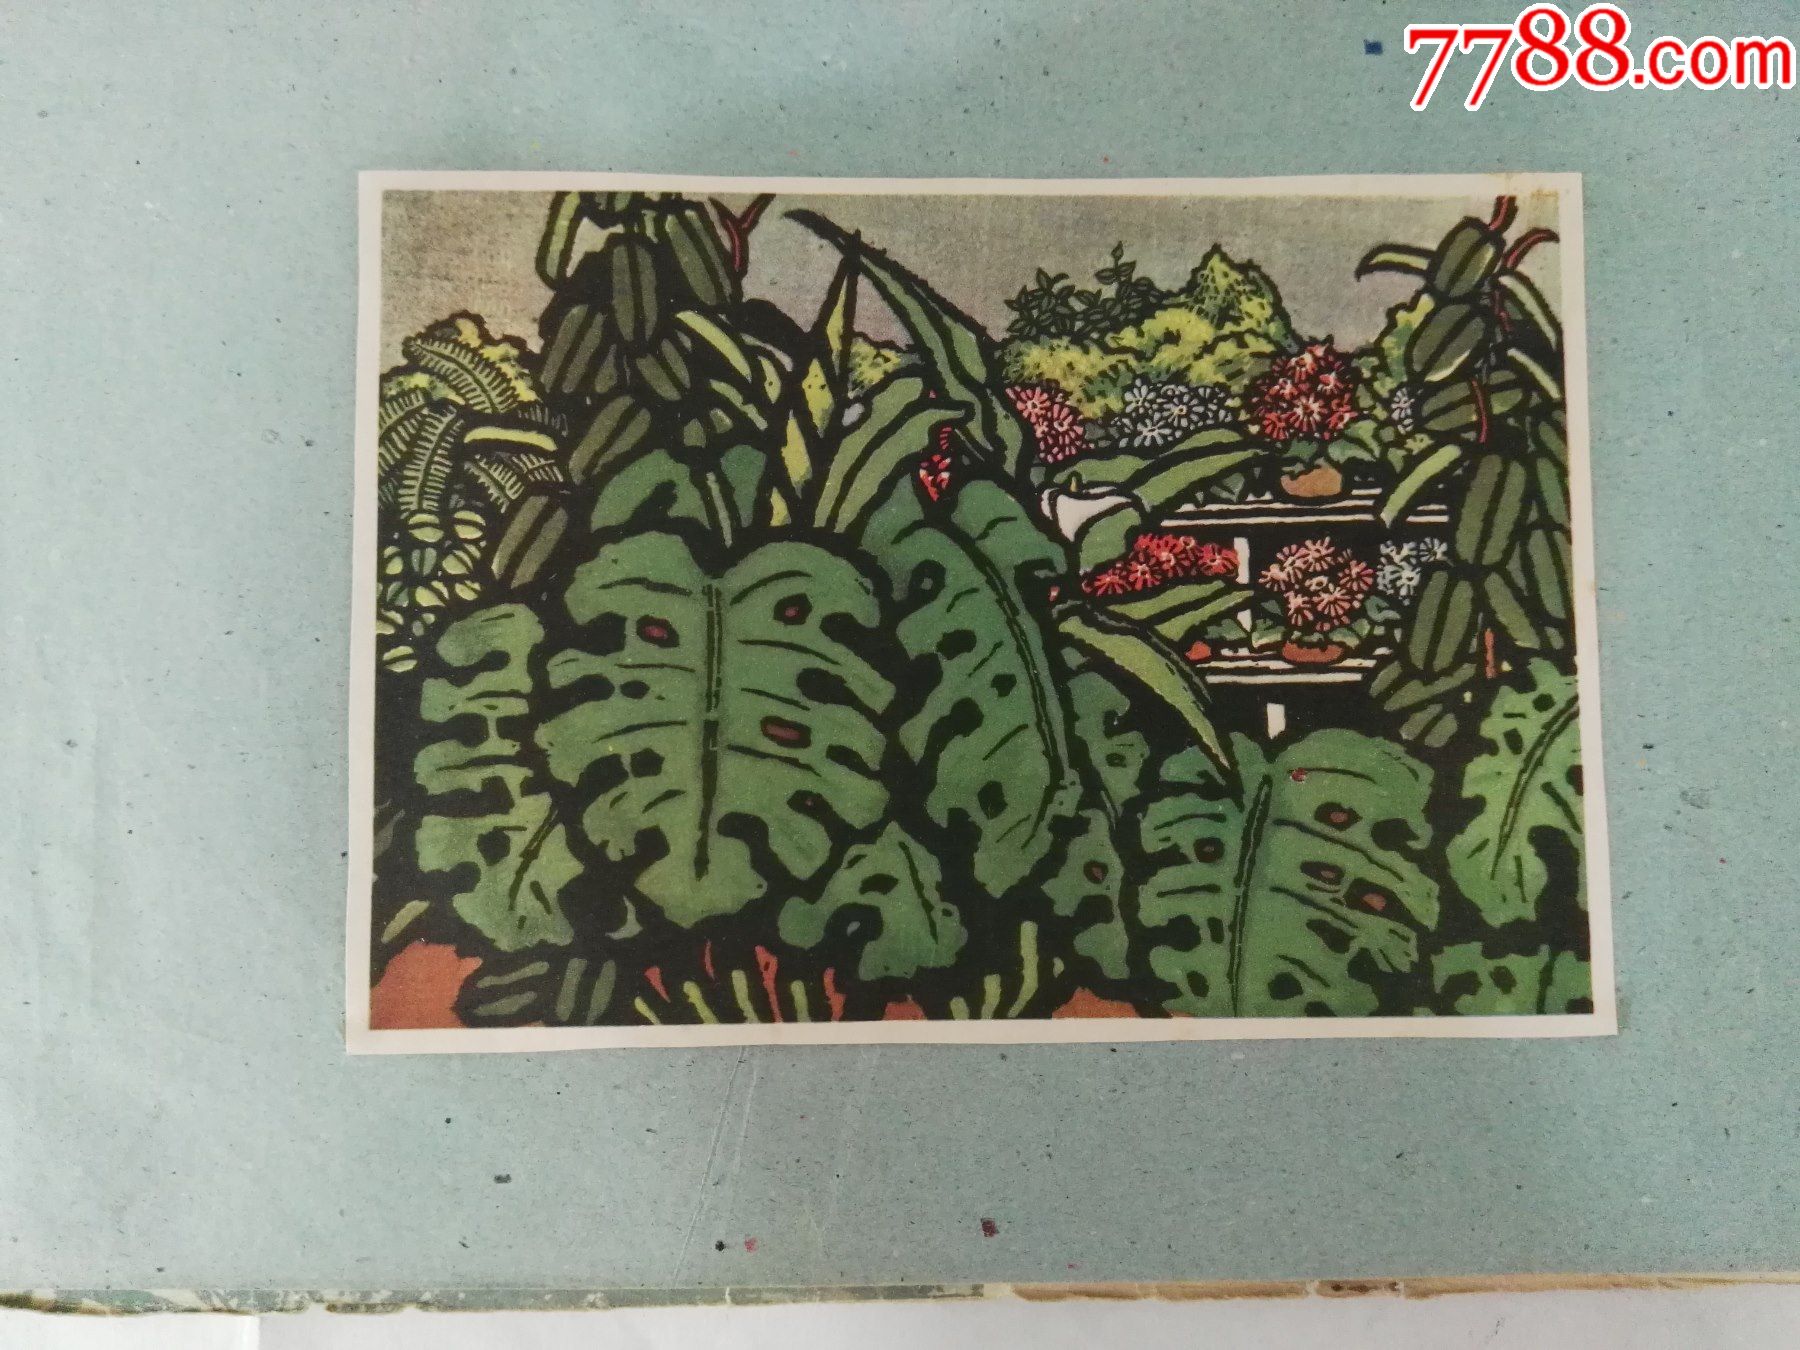 50年代彩色版画选,抗美援朝题材,解放台湾题材,解放西藏题材